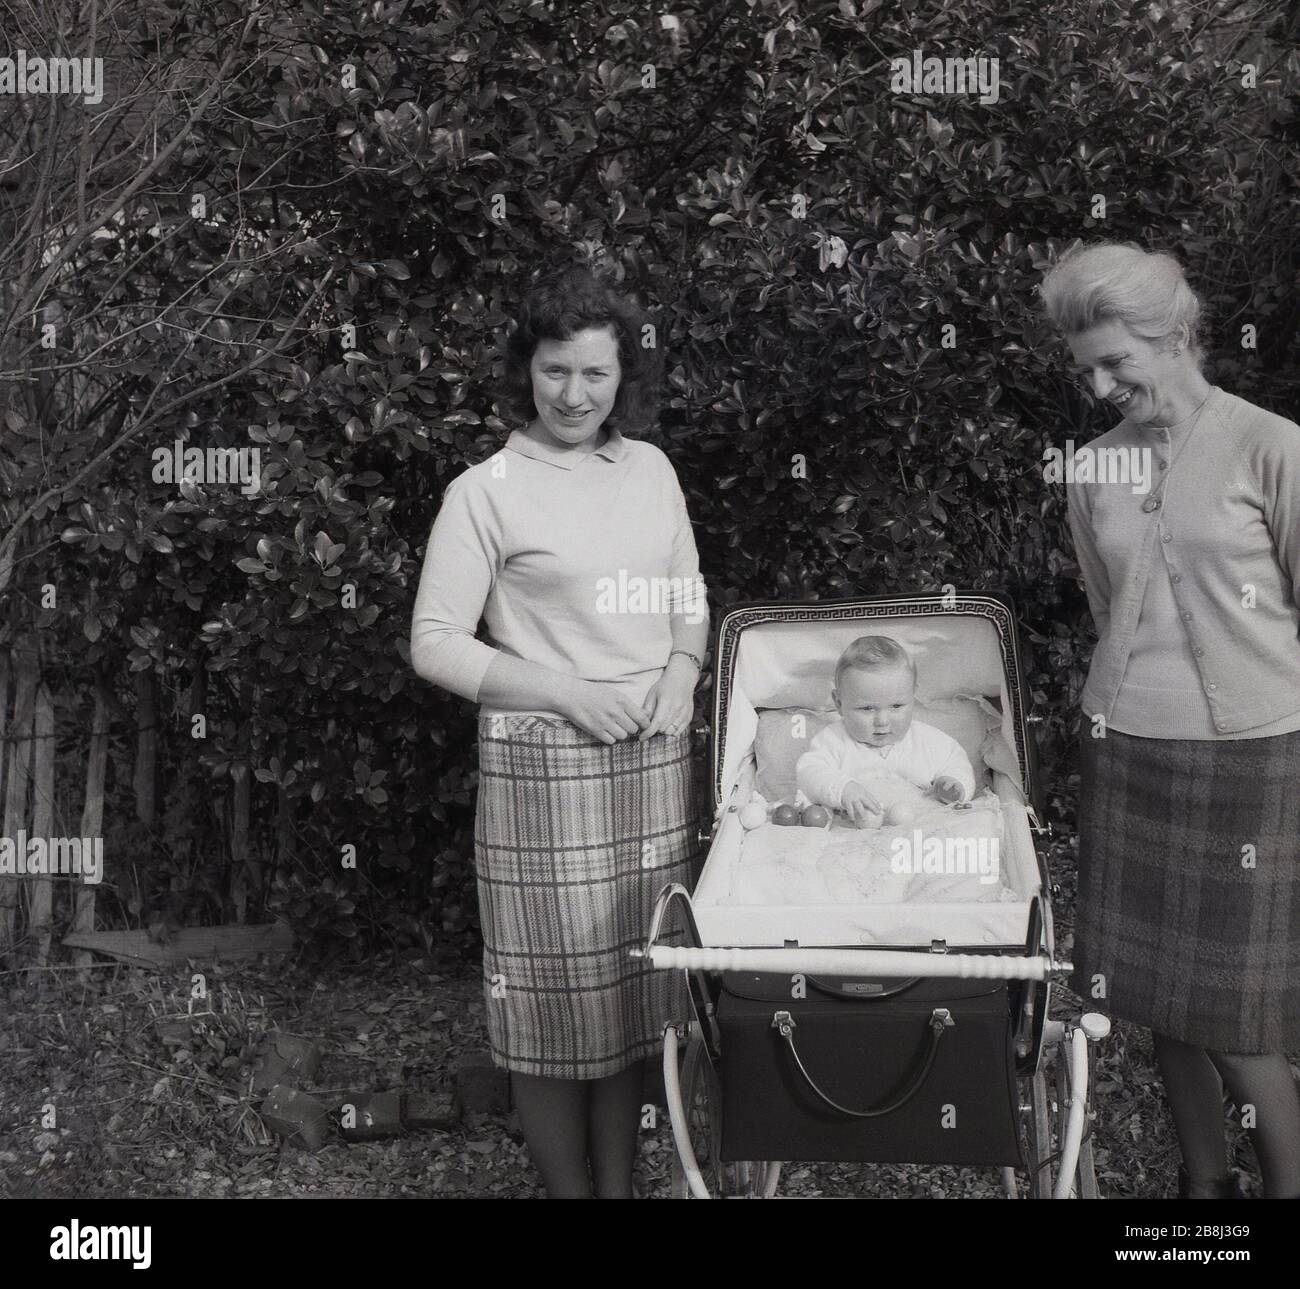 Années 50, historique, fière grand-mère, mère et bébé dans un pram de  l'époque debout ensemble à l'extérieur, Angleterre, Royaume-Uni. La mère et  le grand-mère de Bothe portent des jupes à carreaux ou